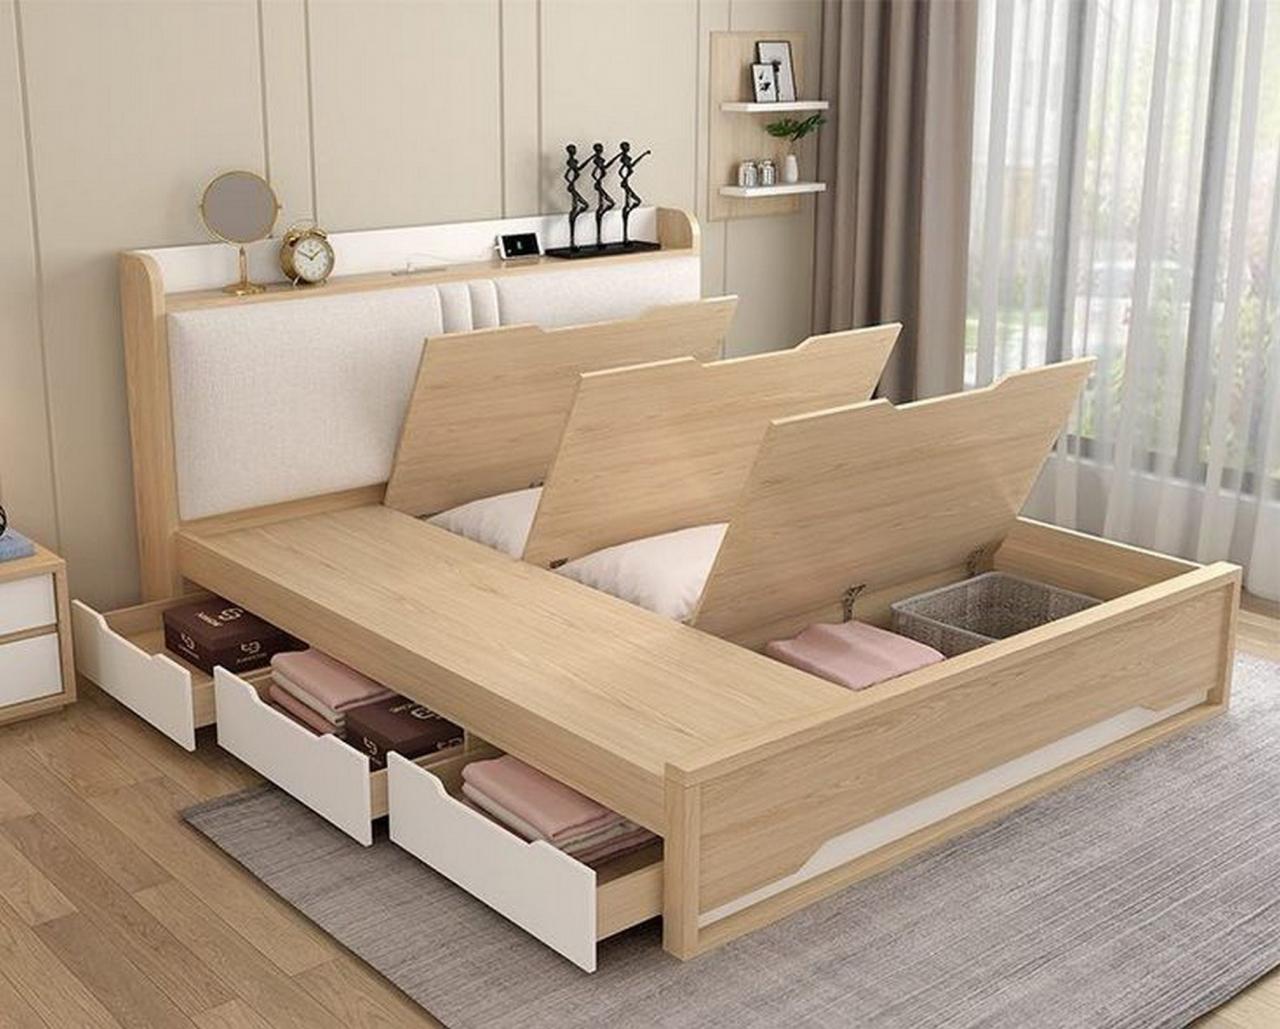 Nội thất phòng ngủ bằng gỗ